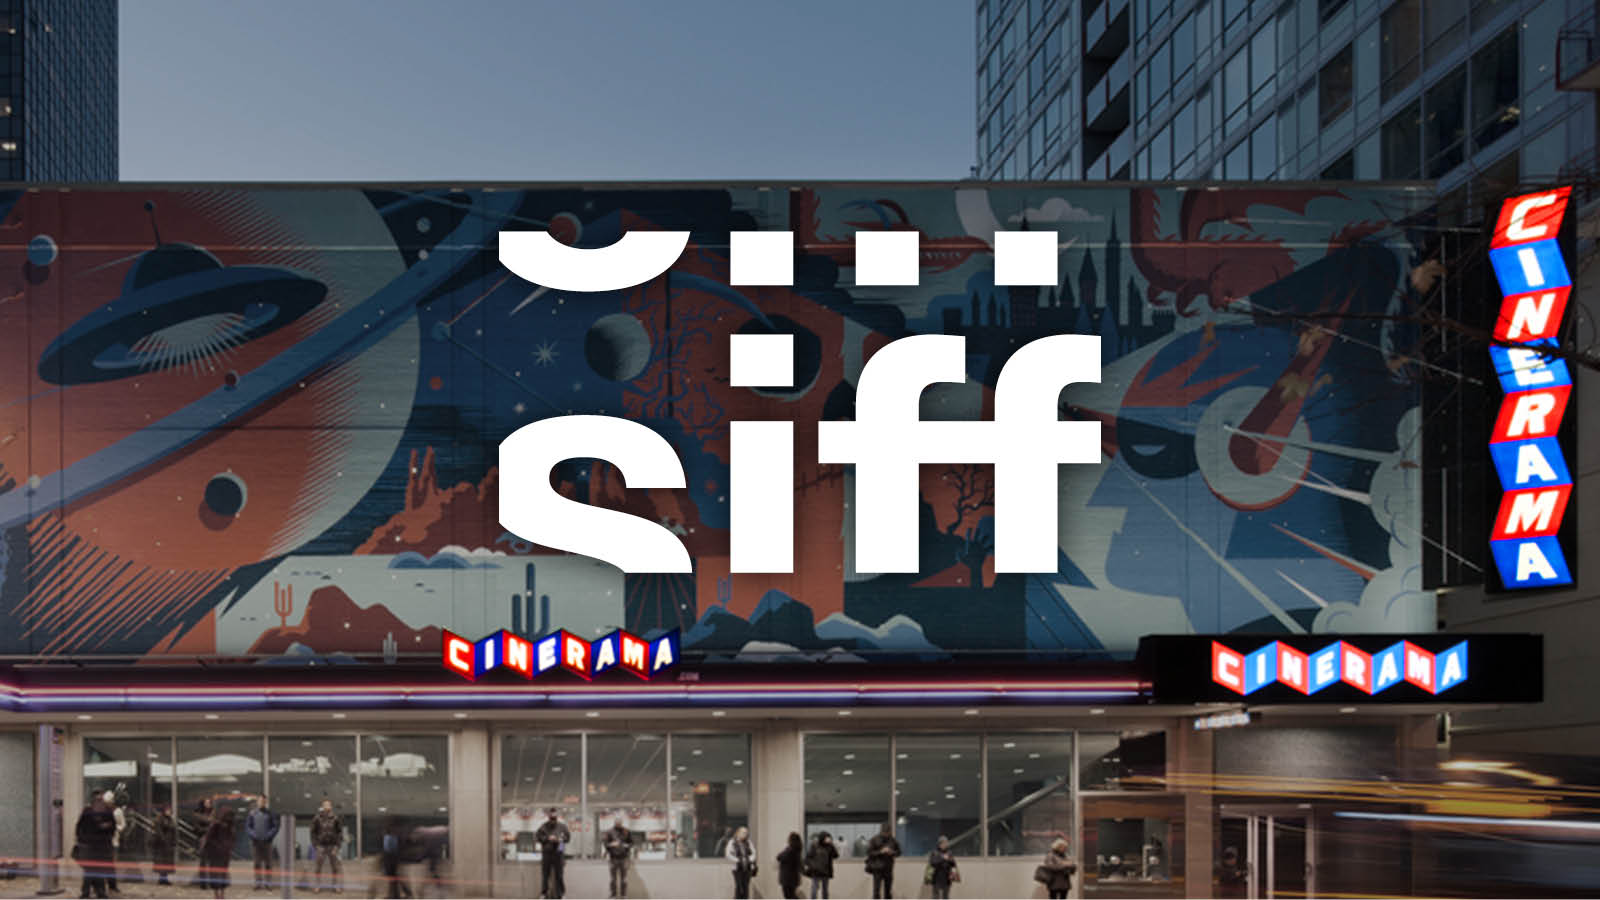 SIFF Cinerama